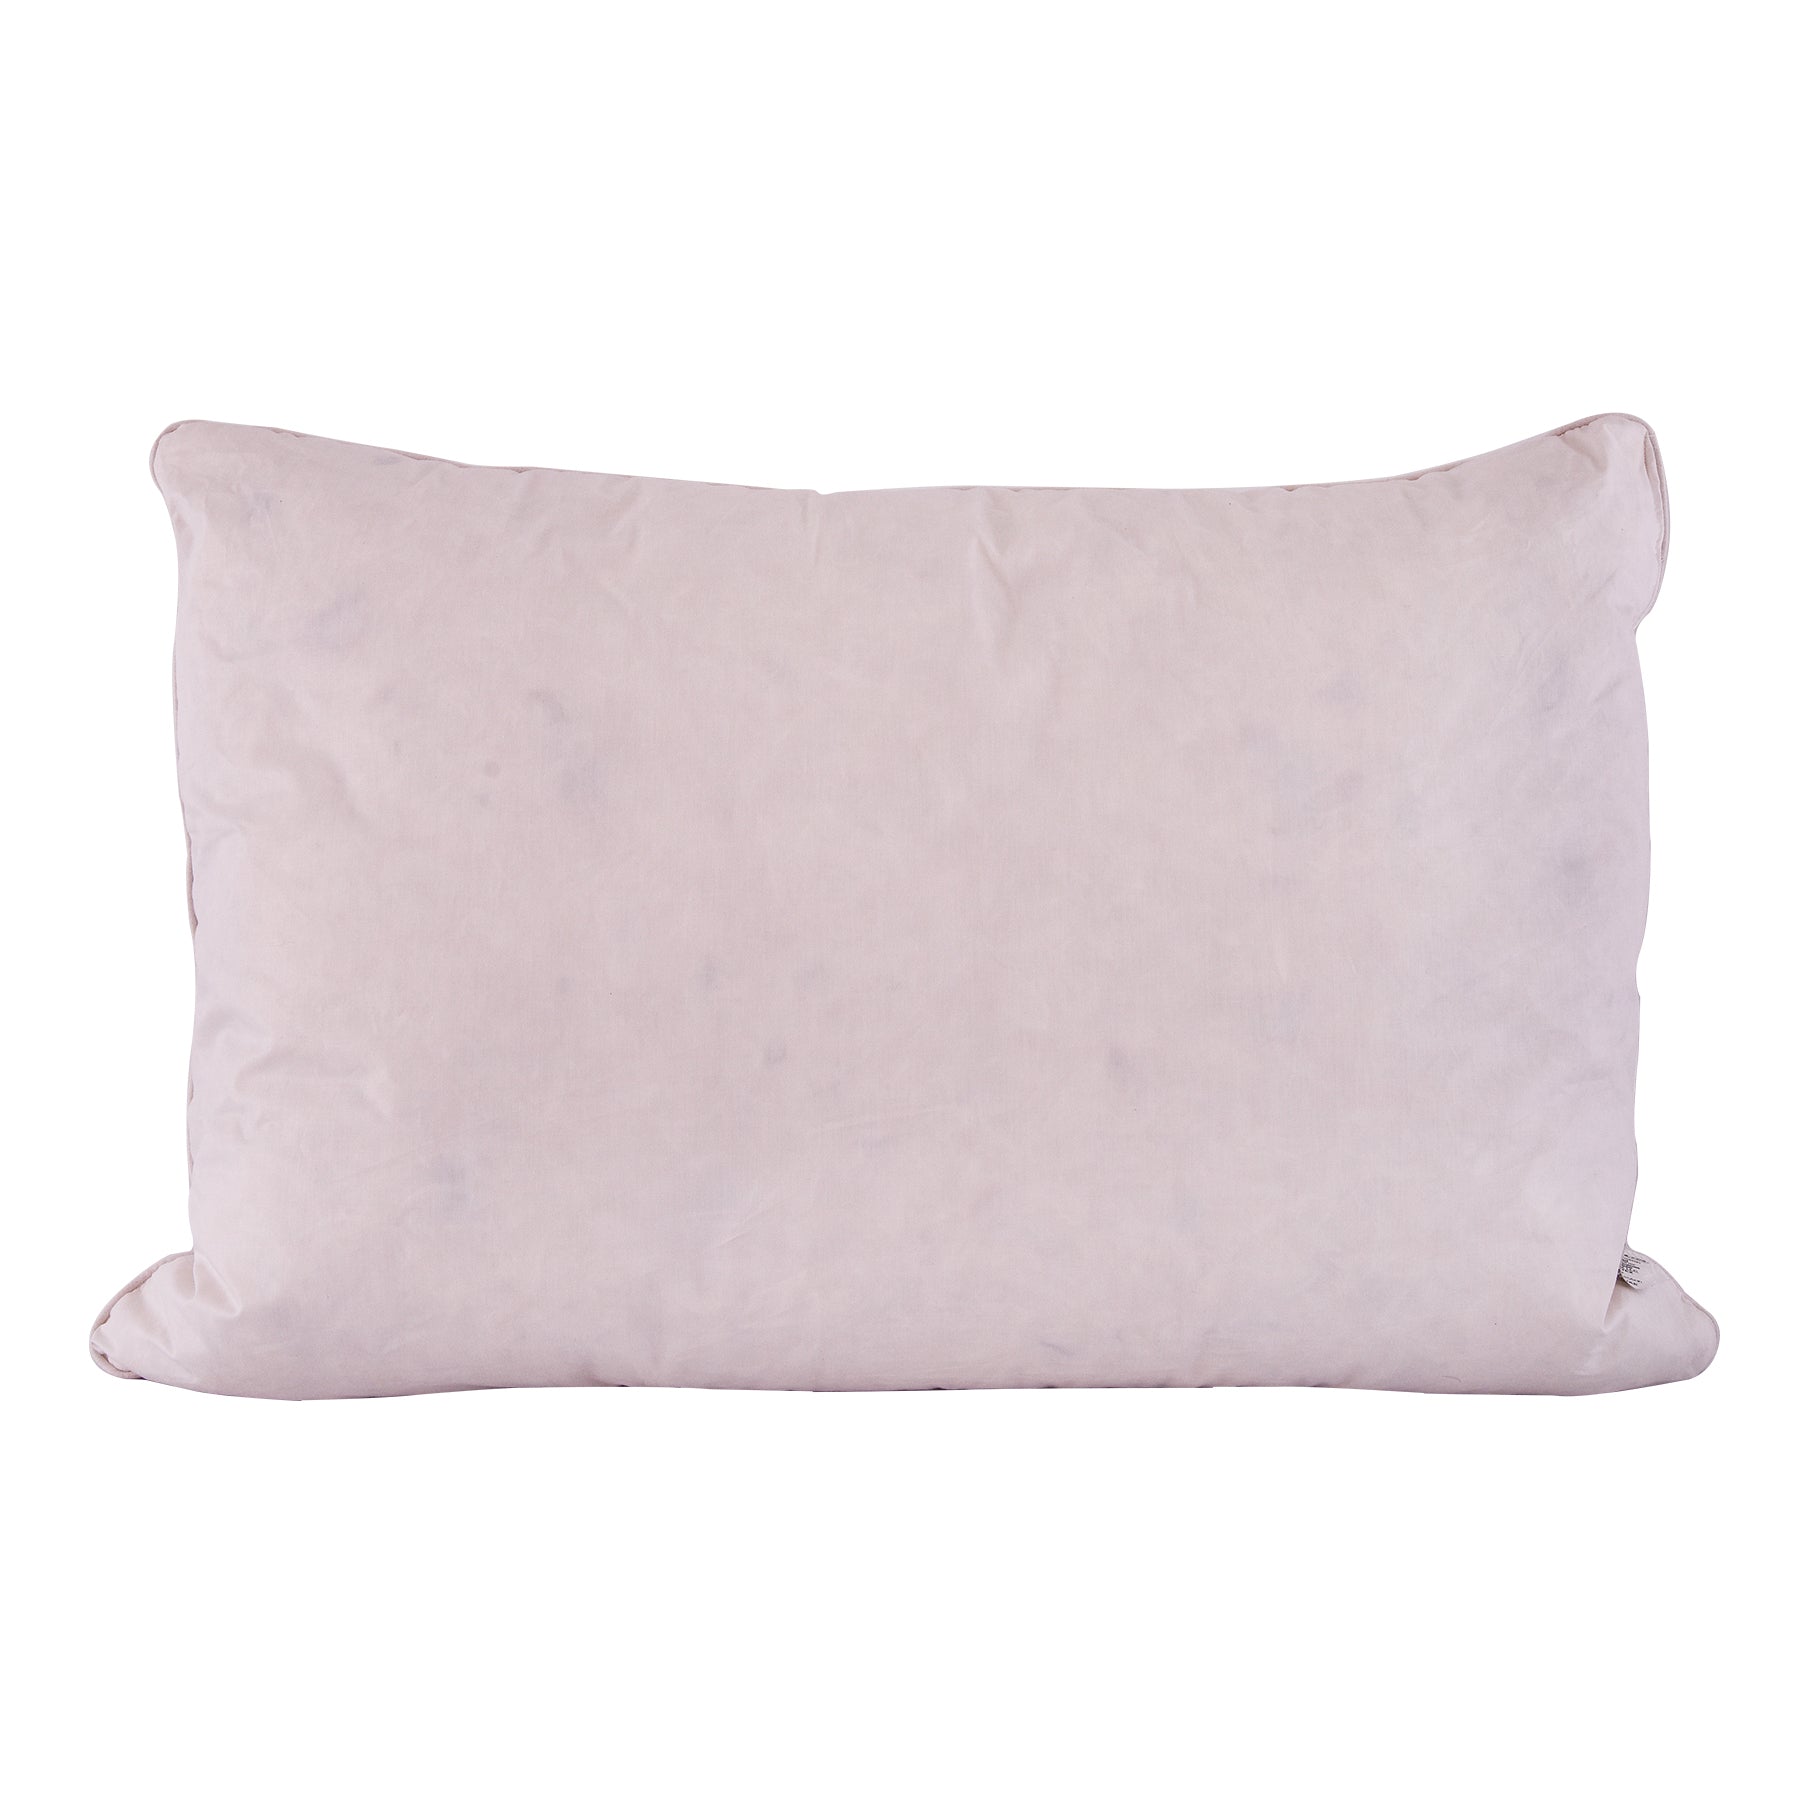 Luxurious Soft Feather Pillow - WhiteSize: 51x76cm.